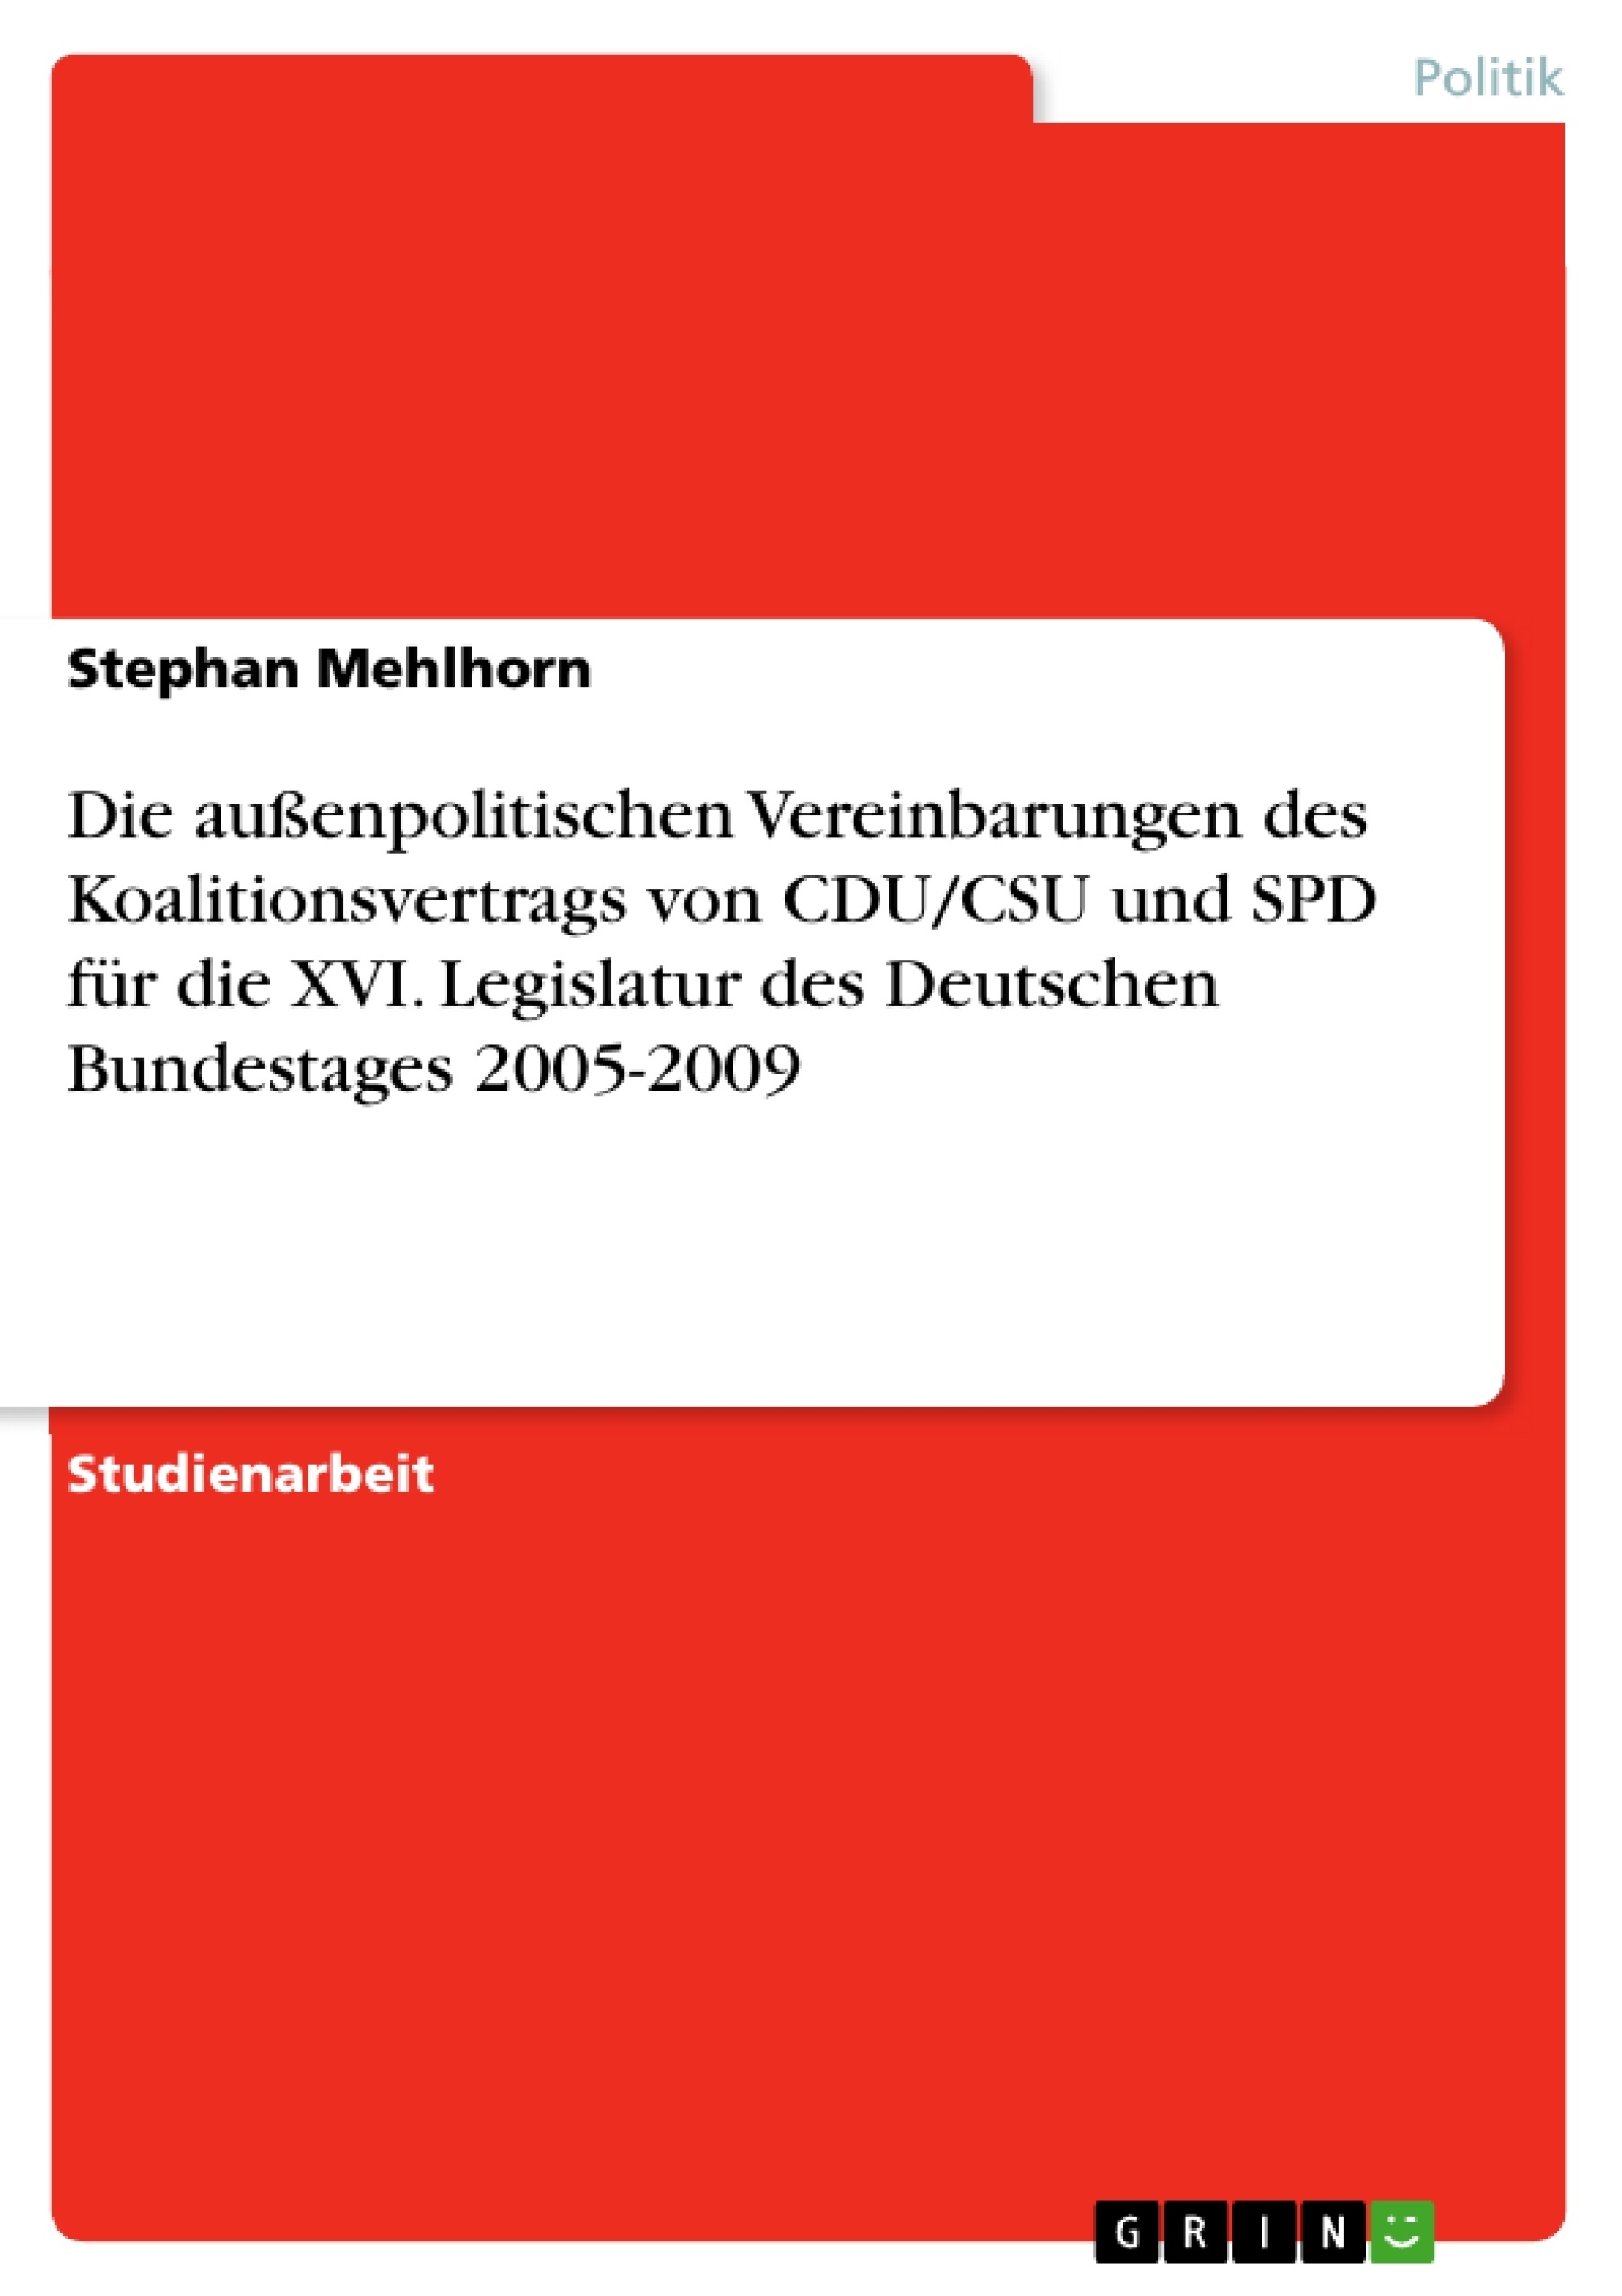 Título: Die außenpolitischen Vereinbarungen des Koalitionsvertrags von CDU/CSU und SPD für die XVI. Legislatur des Deutschen Bundestages 2005-2009